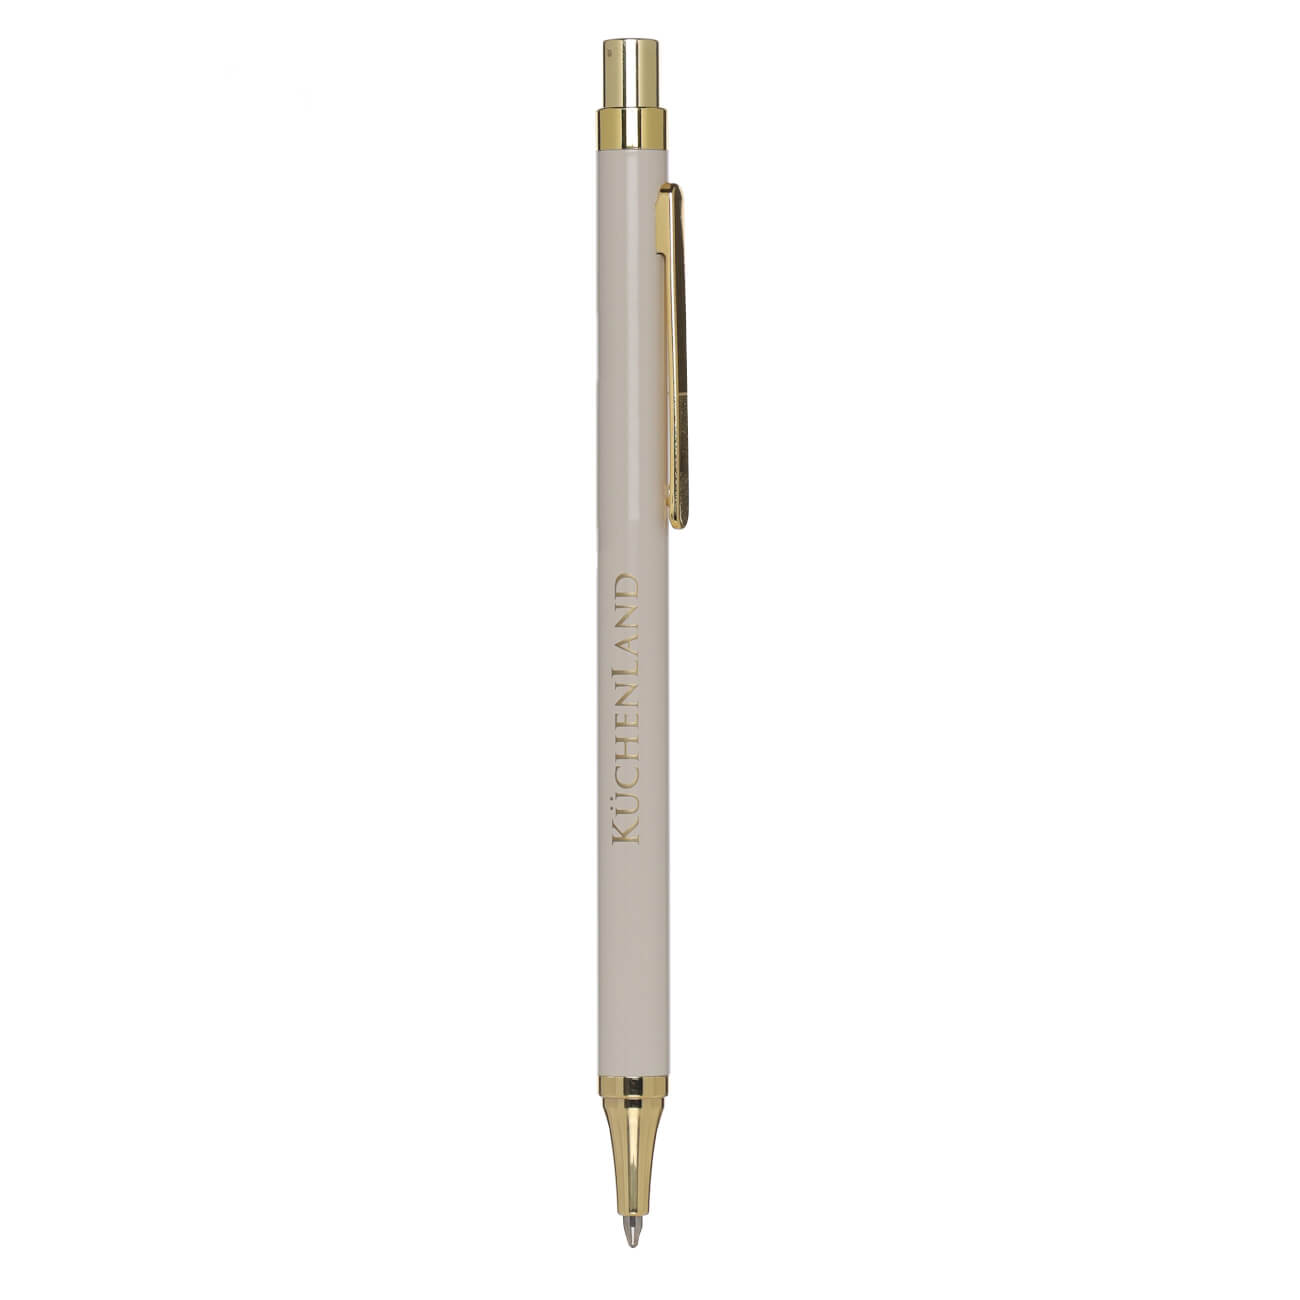 Ручка шариковая, 14 см, металл/пластик, бежевая, Eclipse ручка на открытке с бумажным блоком the best teacher